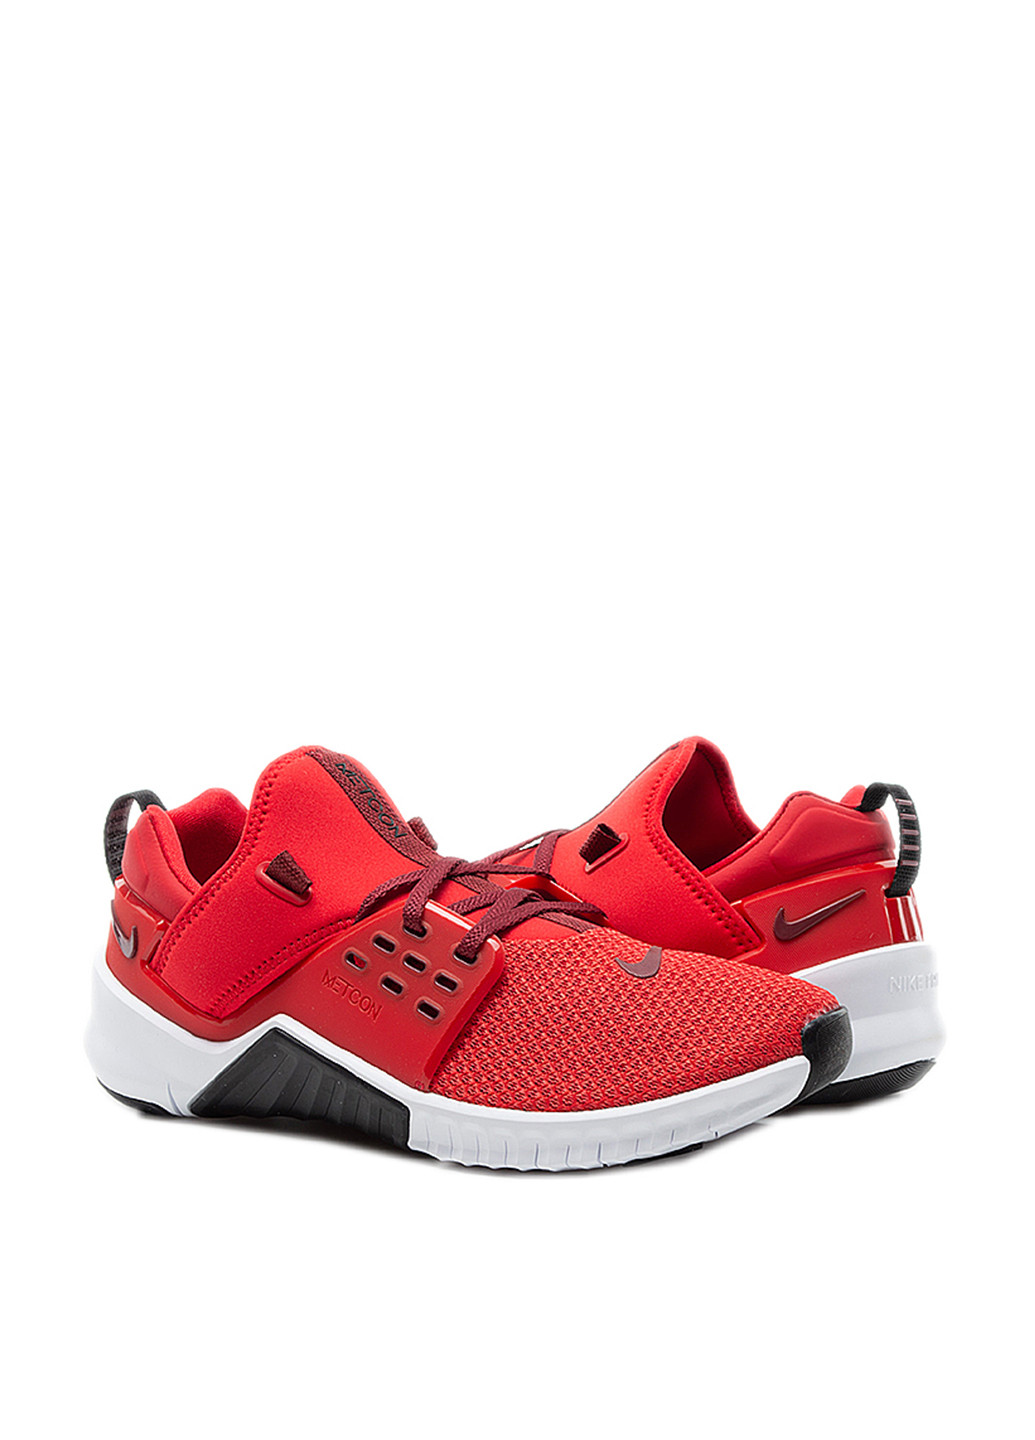 Красные всесезонные кроссовки Nike Nike Free X Metcon 2